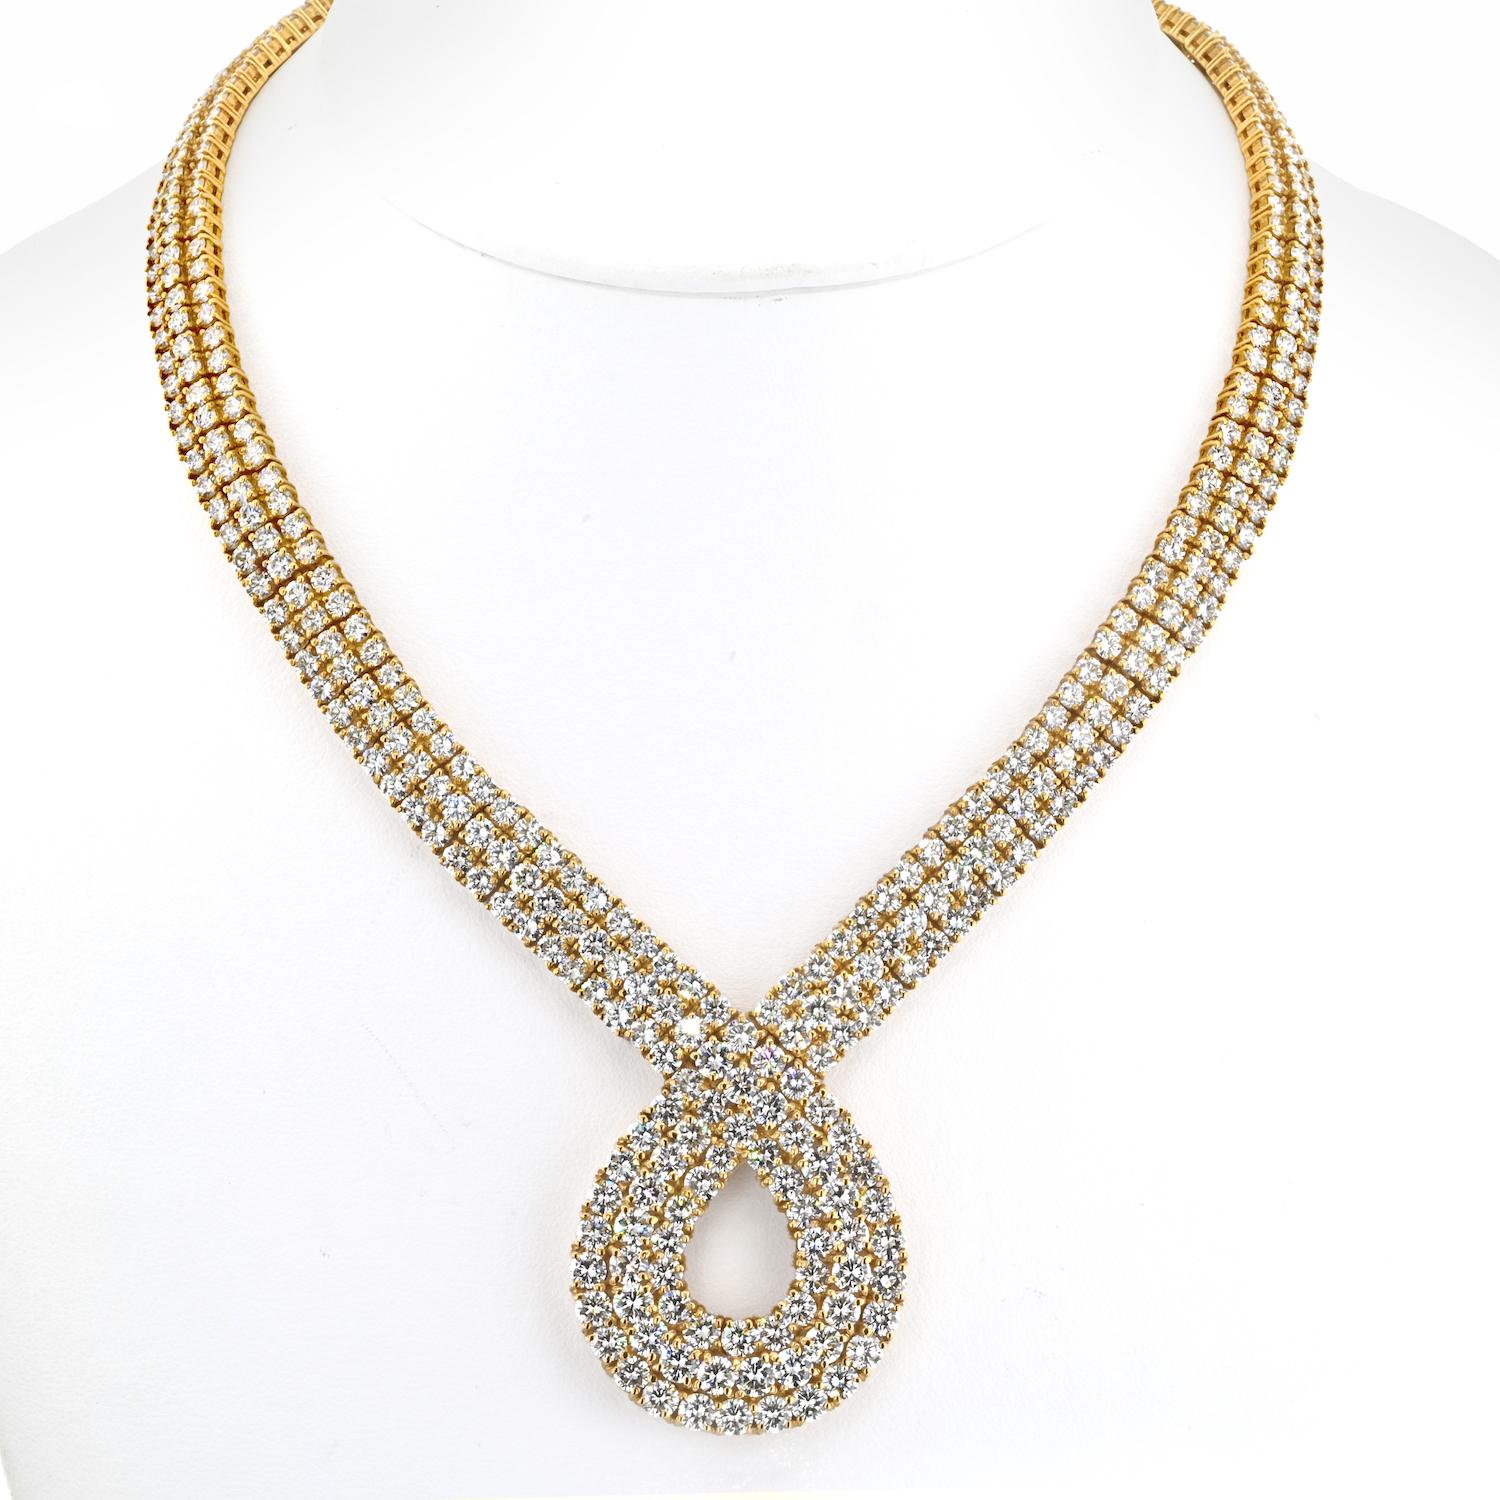 Lassen Sie sich von der Anziehungskraft dieser exquisiten, diamantenen Halskette verzaubern, einer Vision zeitloser Eleganz. 

Die Vorderseite der mit viel Liebe zum Detail aus 18 Karat Gelbgold gefertigten Halskette ist mit drei Reihen von